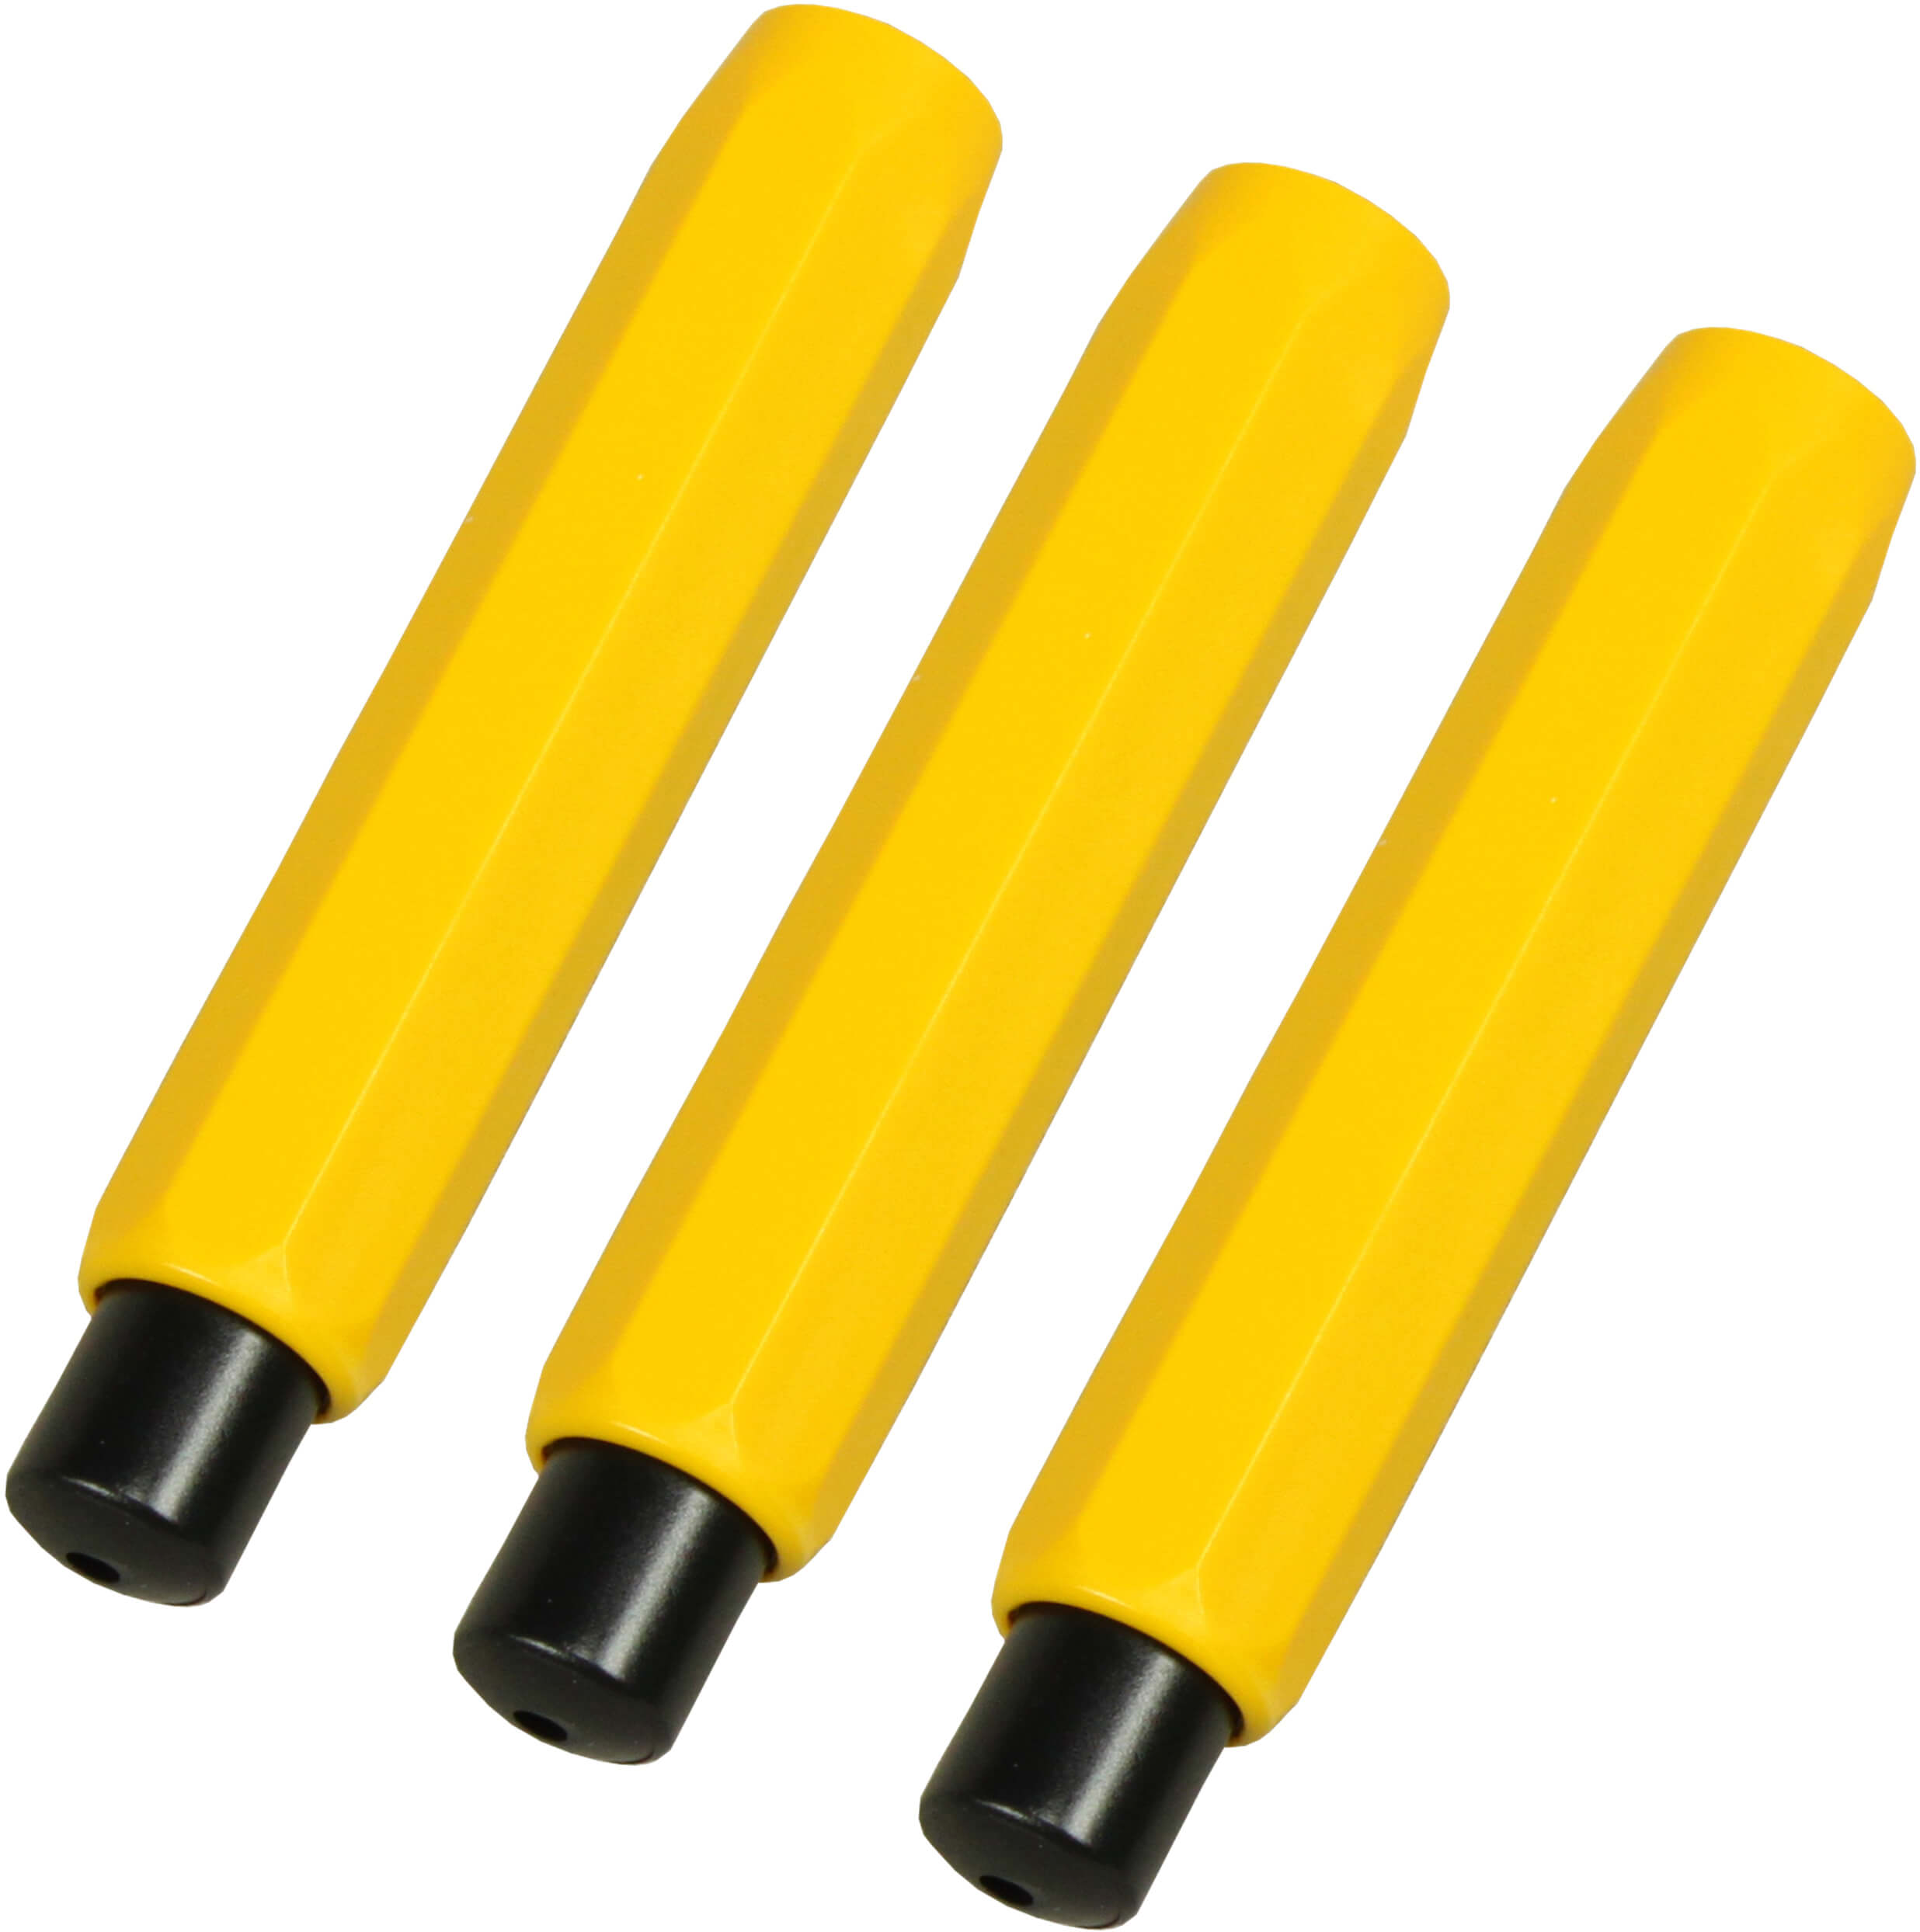 Kreidehalter für Robercolorkreide gelb sofort lieferbar | Bestnr. RC1050-GE